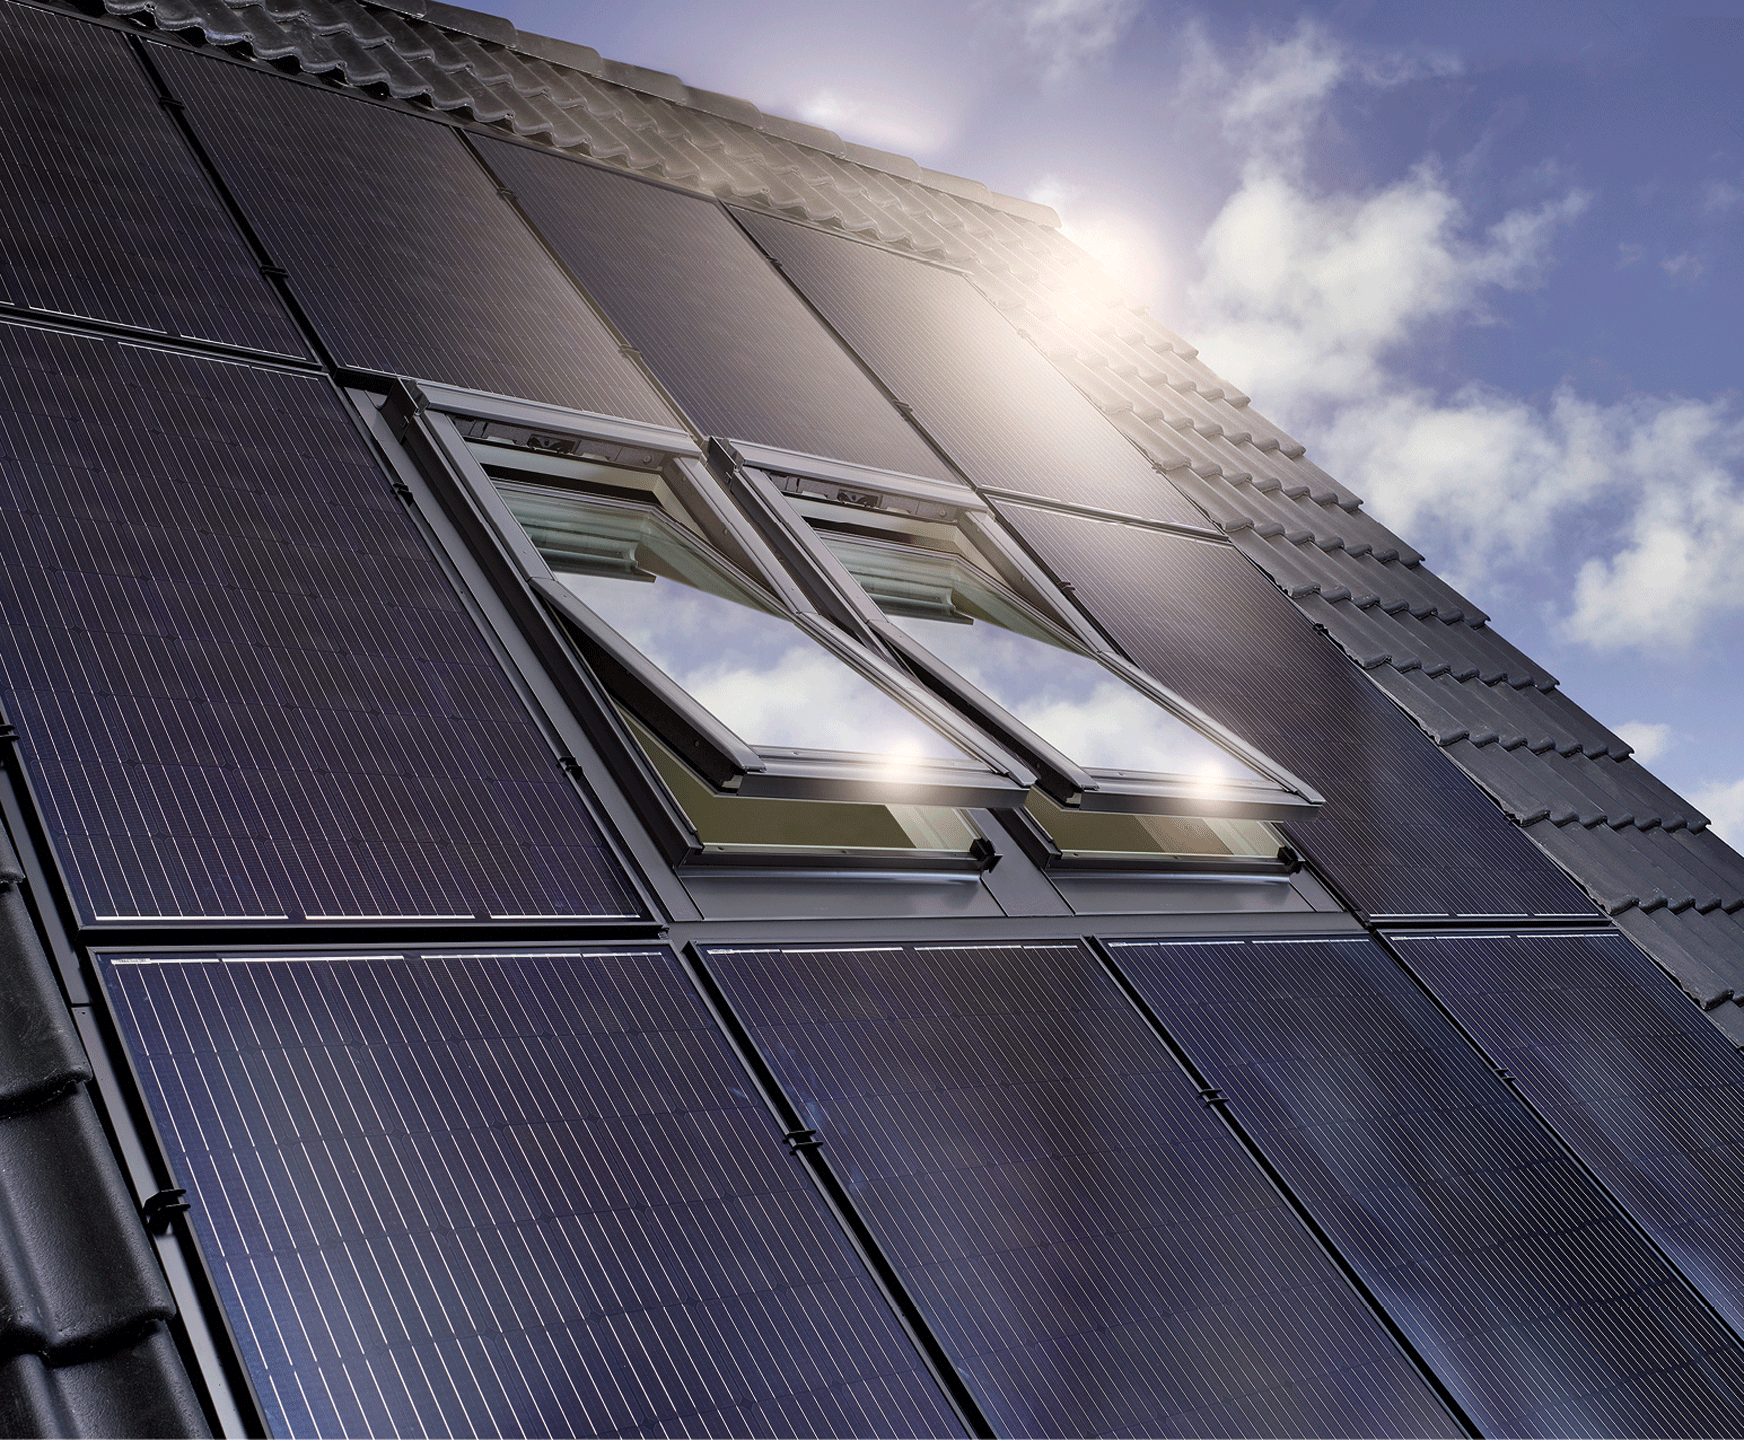 Photovoltaik In-Dach: Das komplettsystem bei Max Schierer Baustoffe